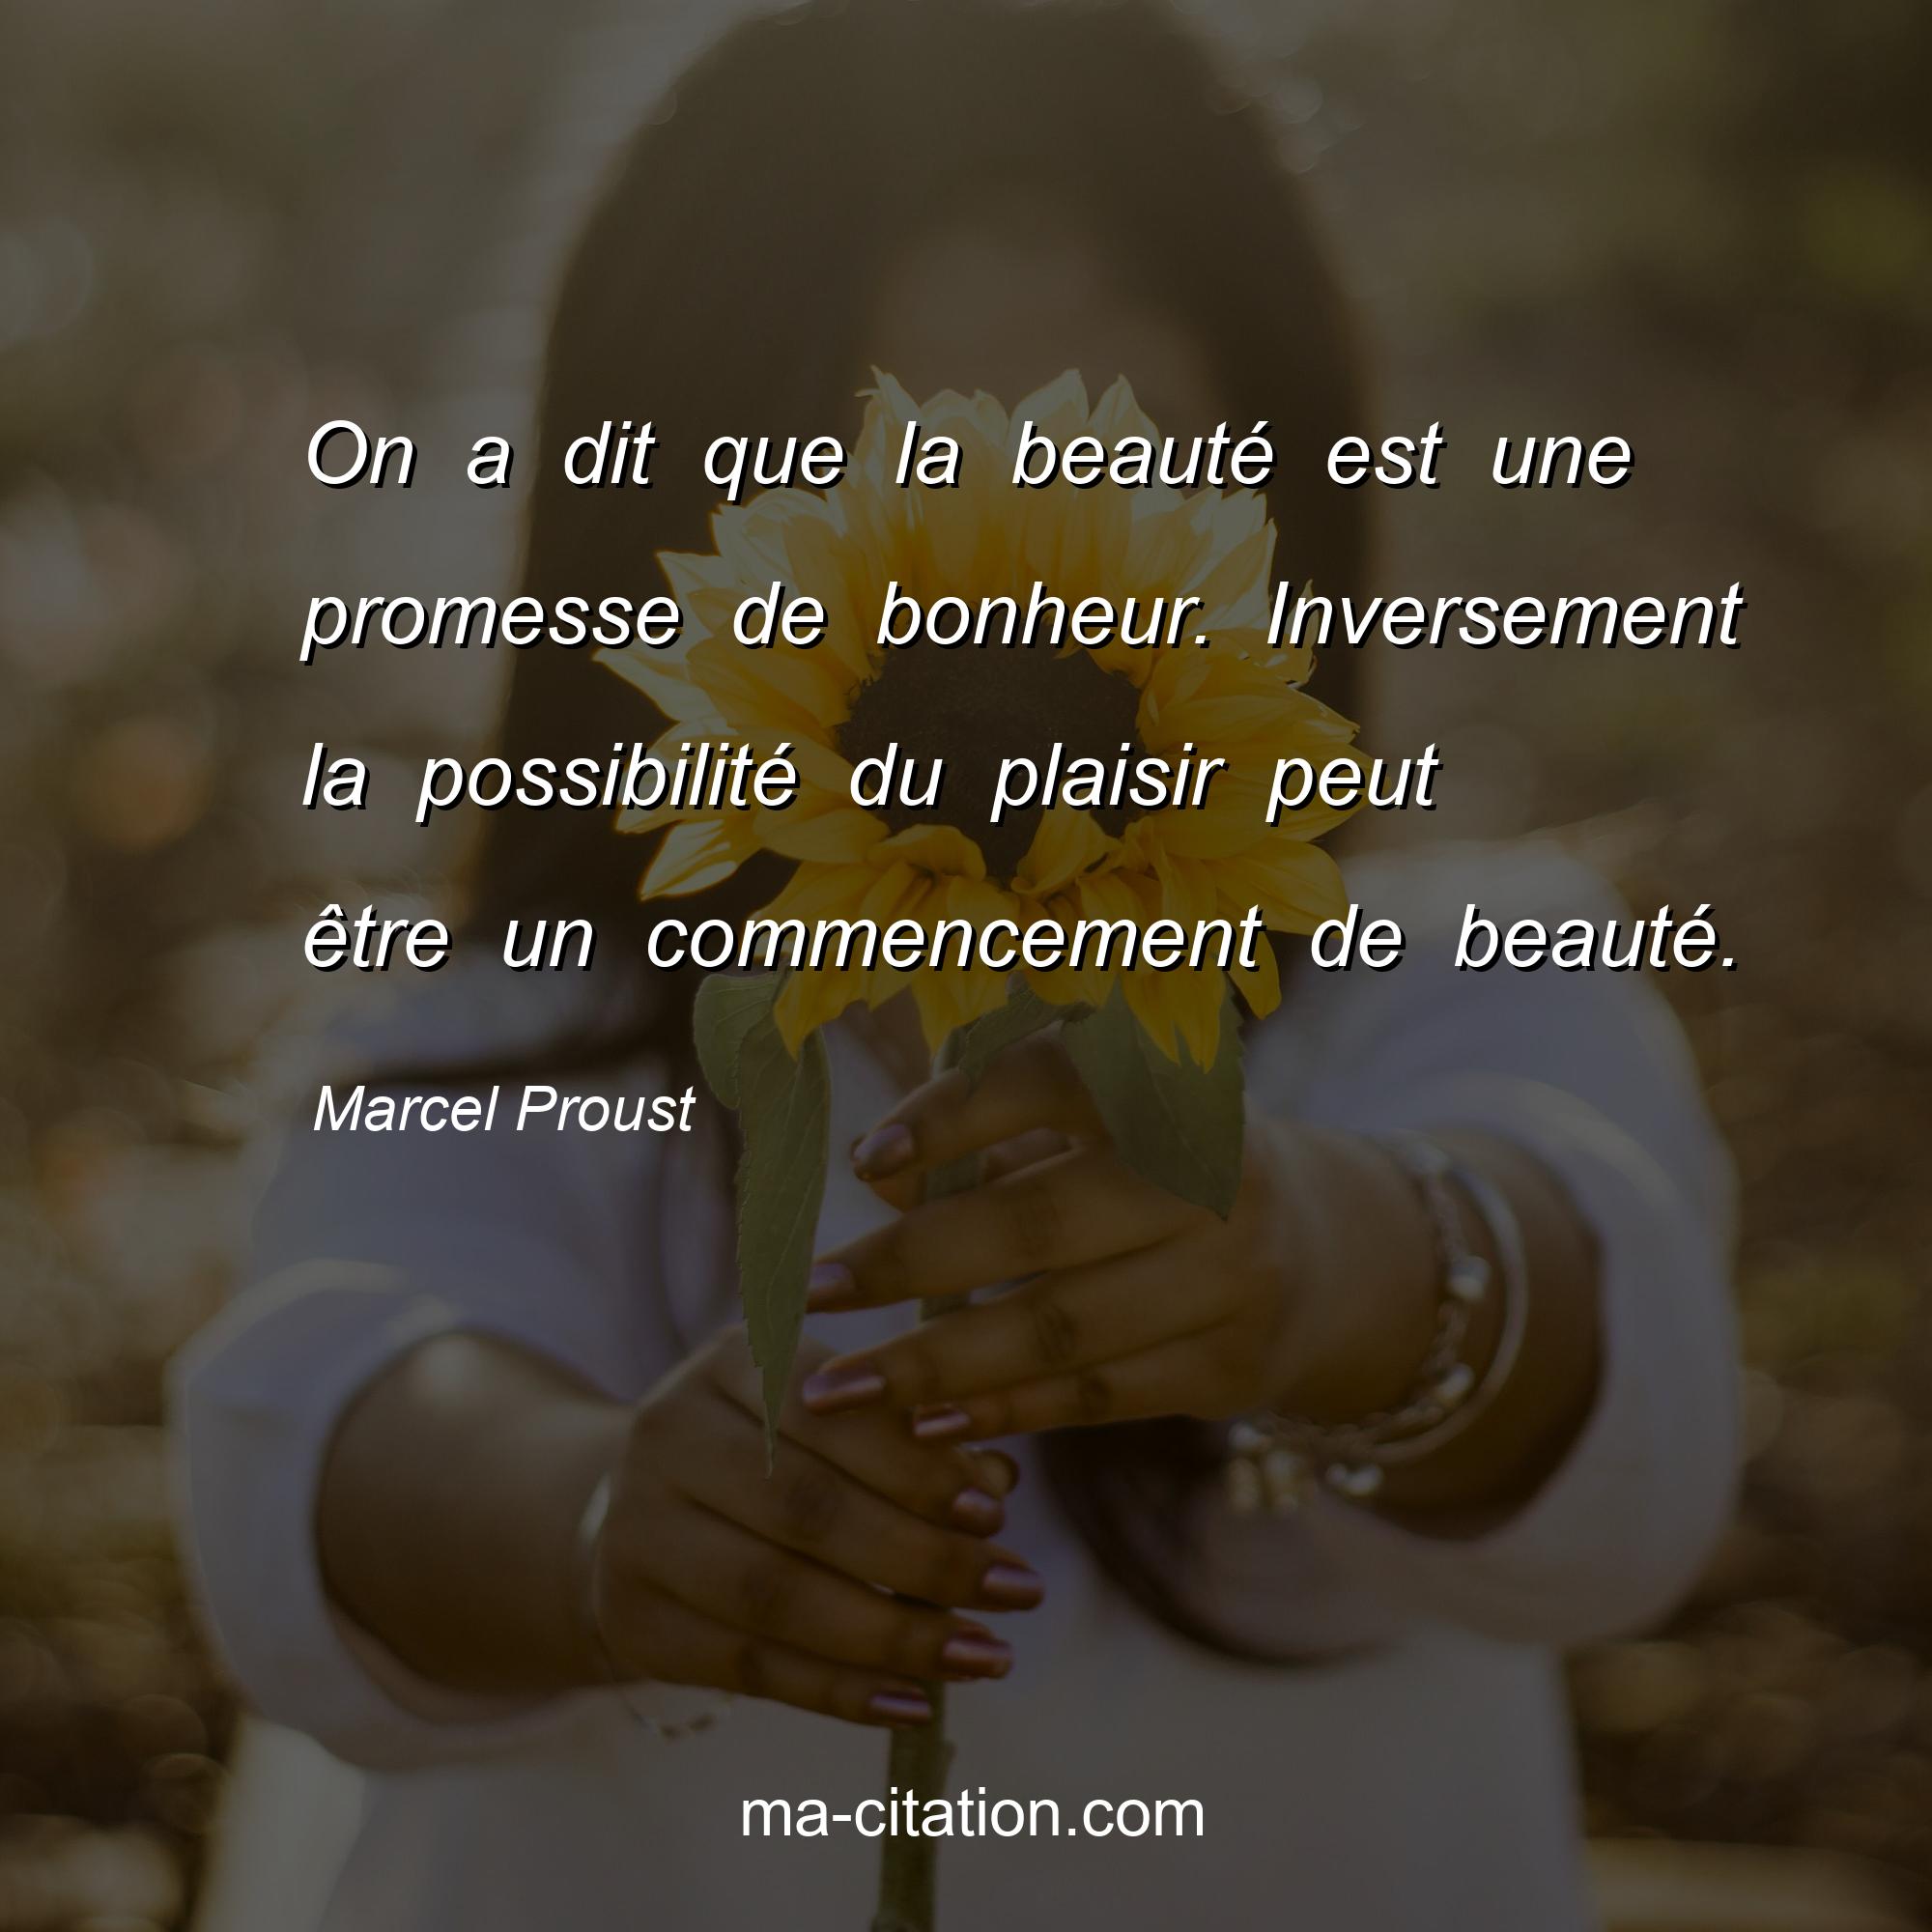 Marcel Proust : On a dit que la beauté est une promesse de bonheur. Inversement la possibilité du plaisir peut être un commencement de beauté.